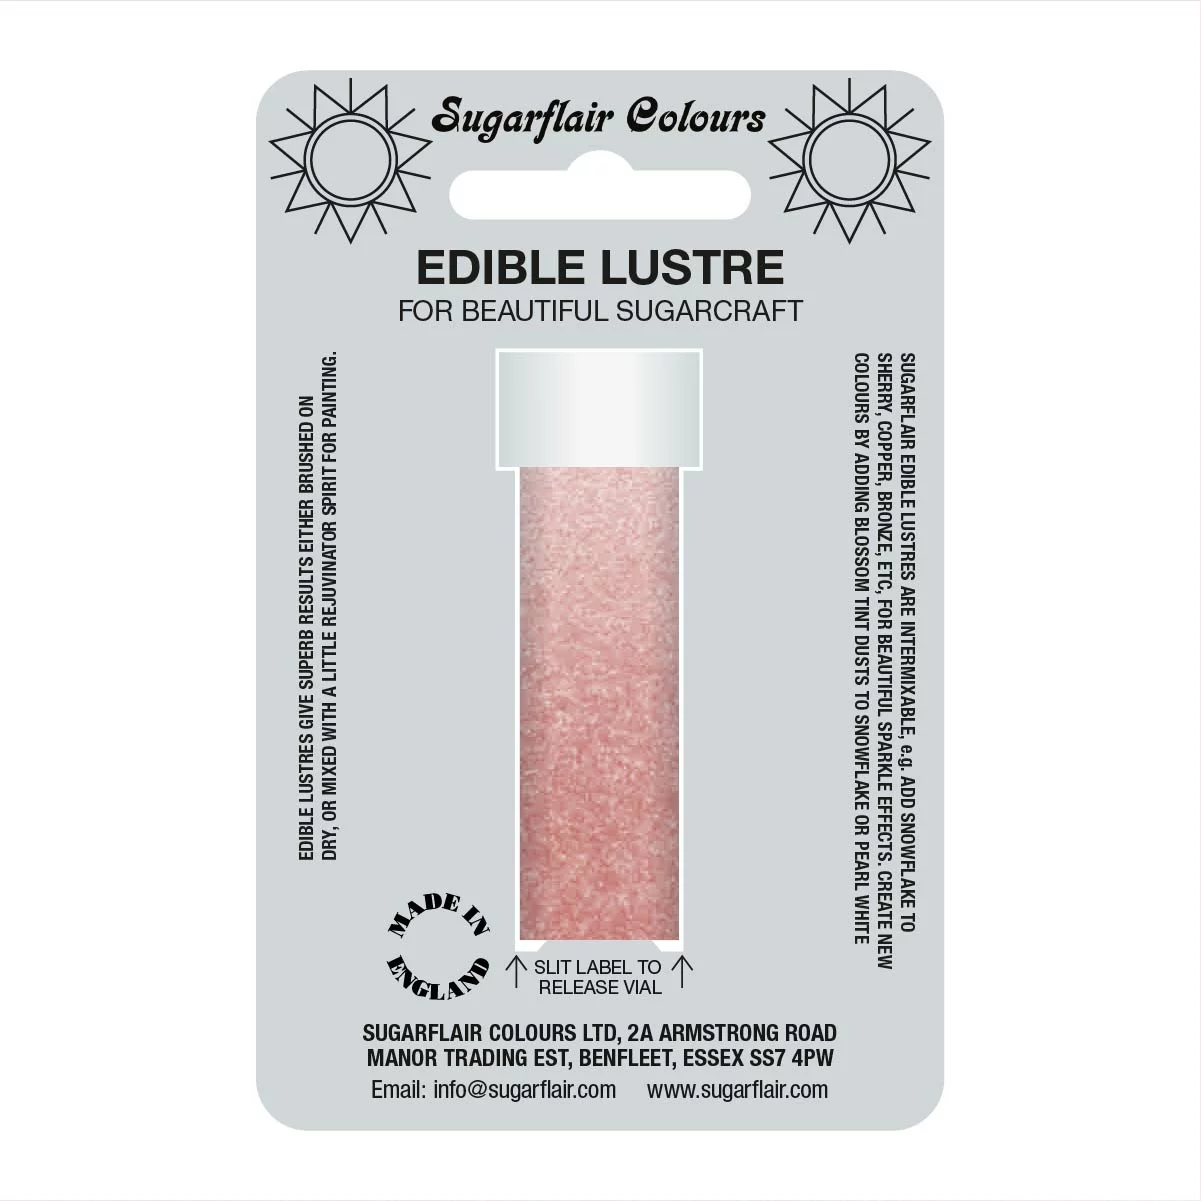 Pink Edible Glitter Dust 2g